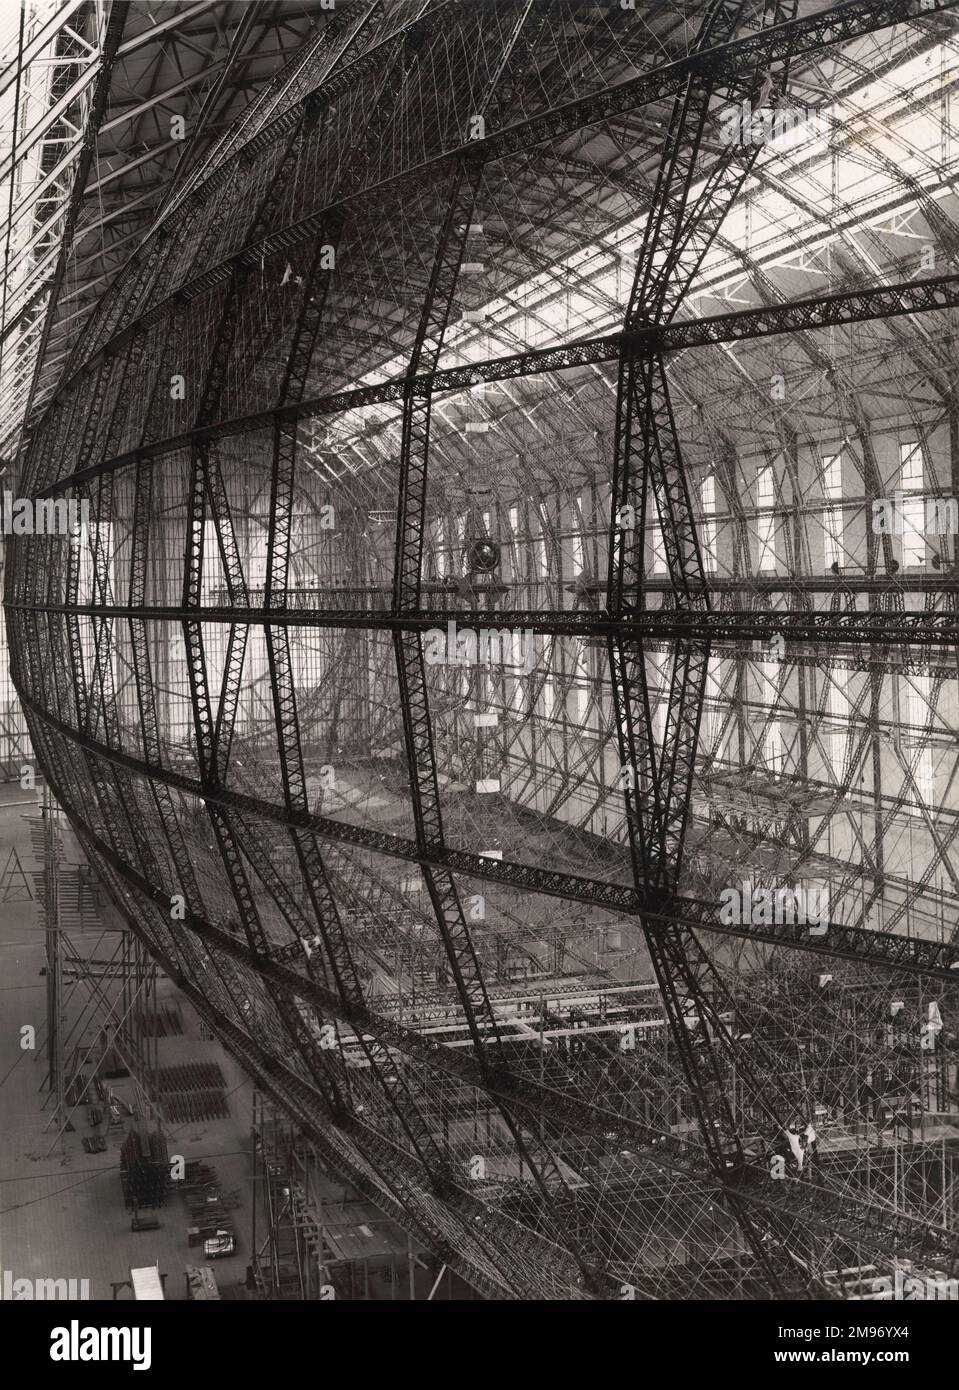 Assemblato a Friedrichshafen tra il 1932 e il 1936, l’enorme scafo dell’Hindenburg è composto da una struttura ad anello composta da travi in duralluminio e fili di rinforzo. Foto Stock